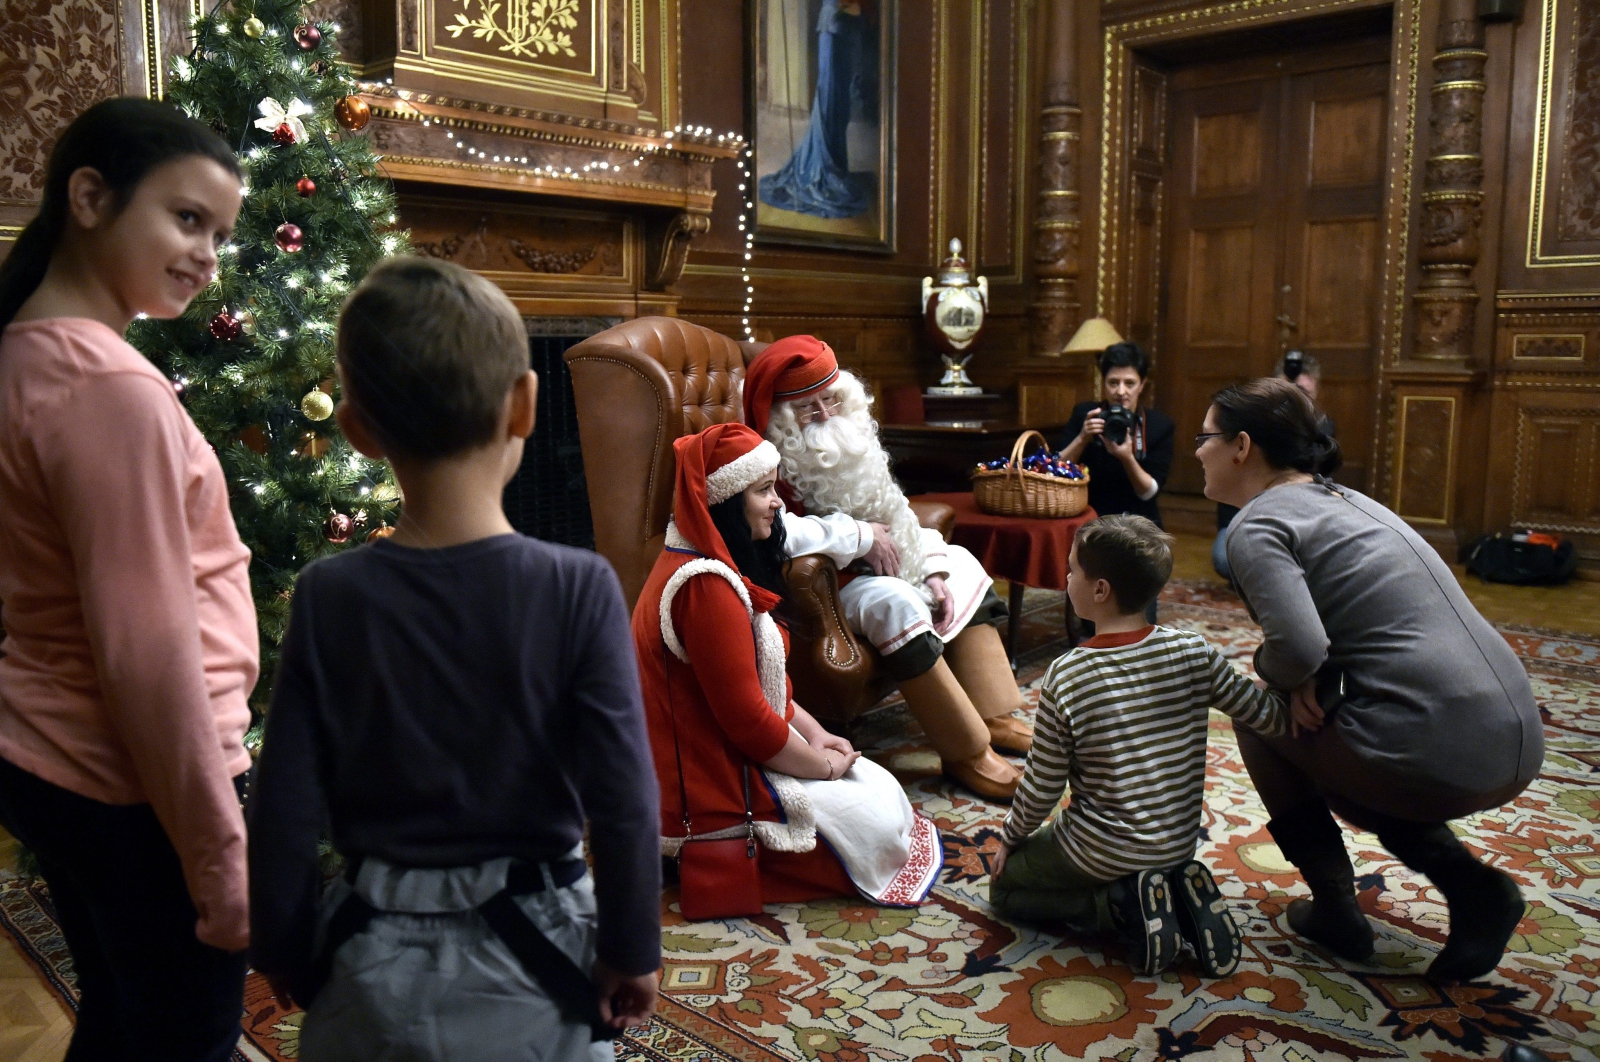 Święty Mikołaj podczas spotkania z dziećmi w Budapeszcie. fot. EPA/ZOLTAN MATHE HUNGARY OUT